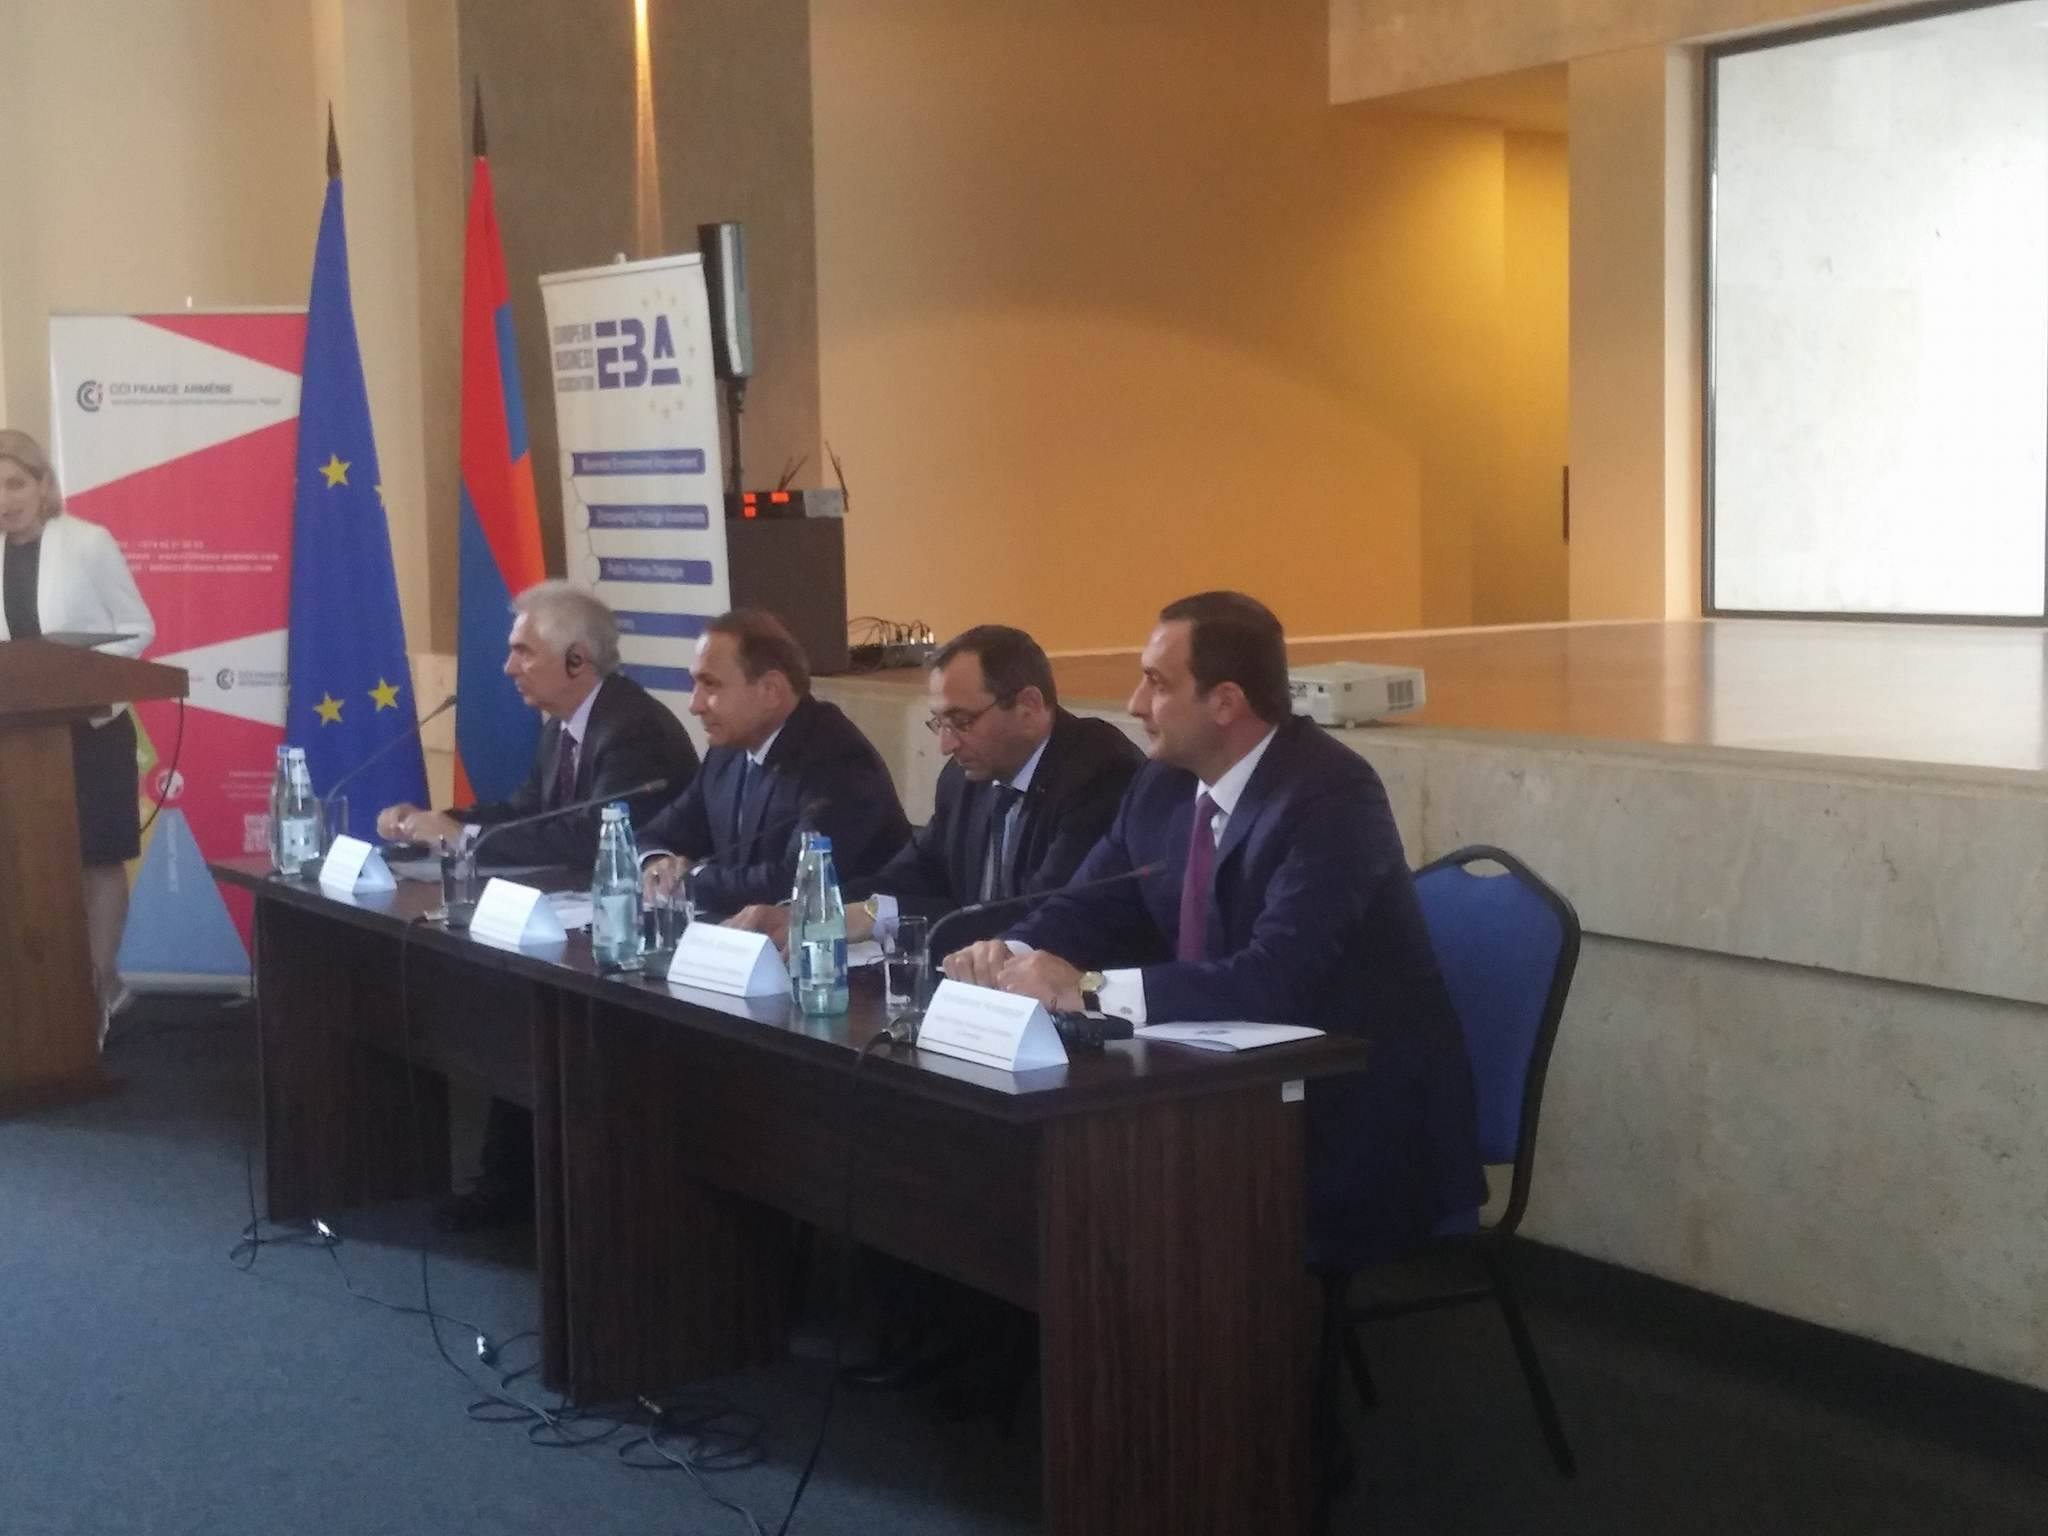 Посол ЕС: Ценность Армении кроется также в исторической способности налаживать связующие мосты